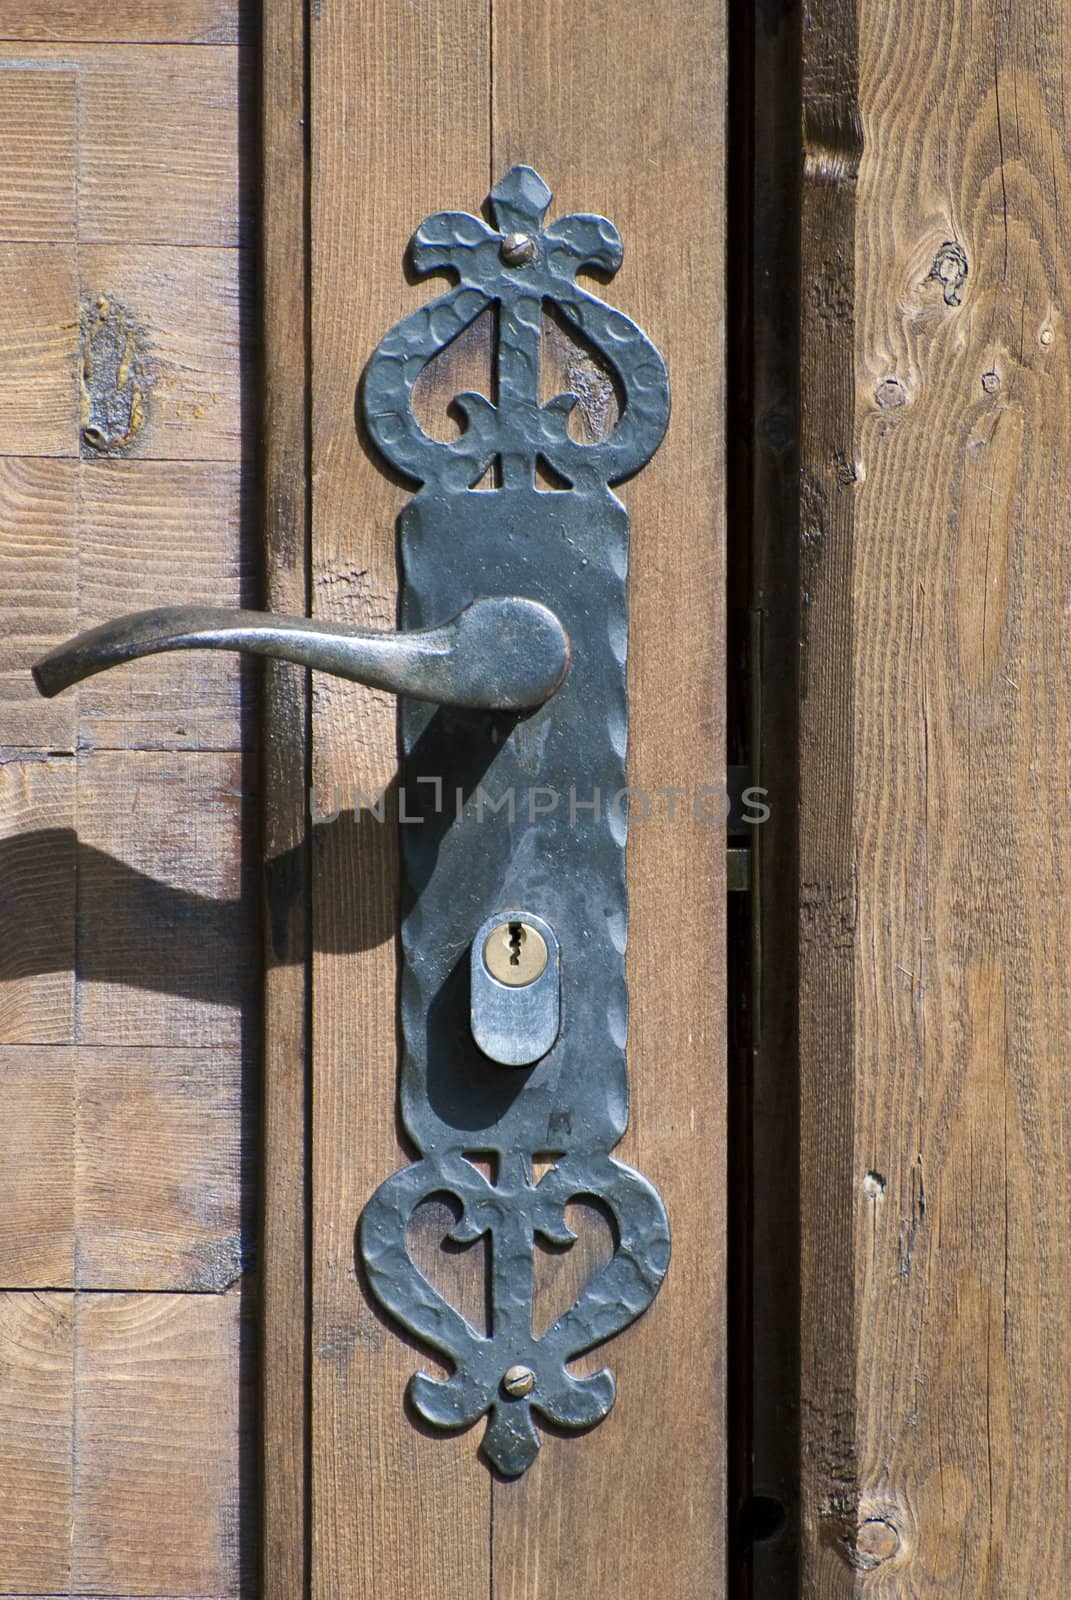 An old wrought iron door handle